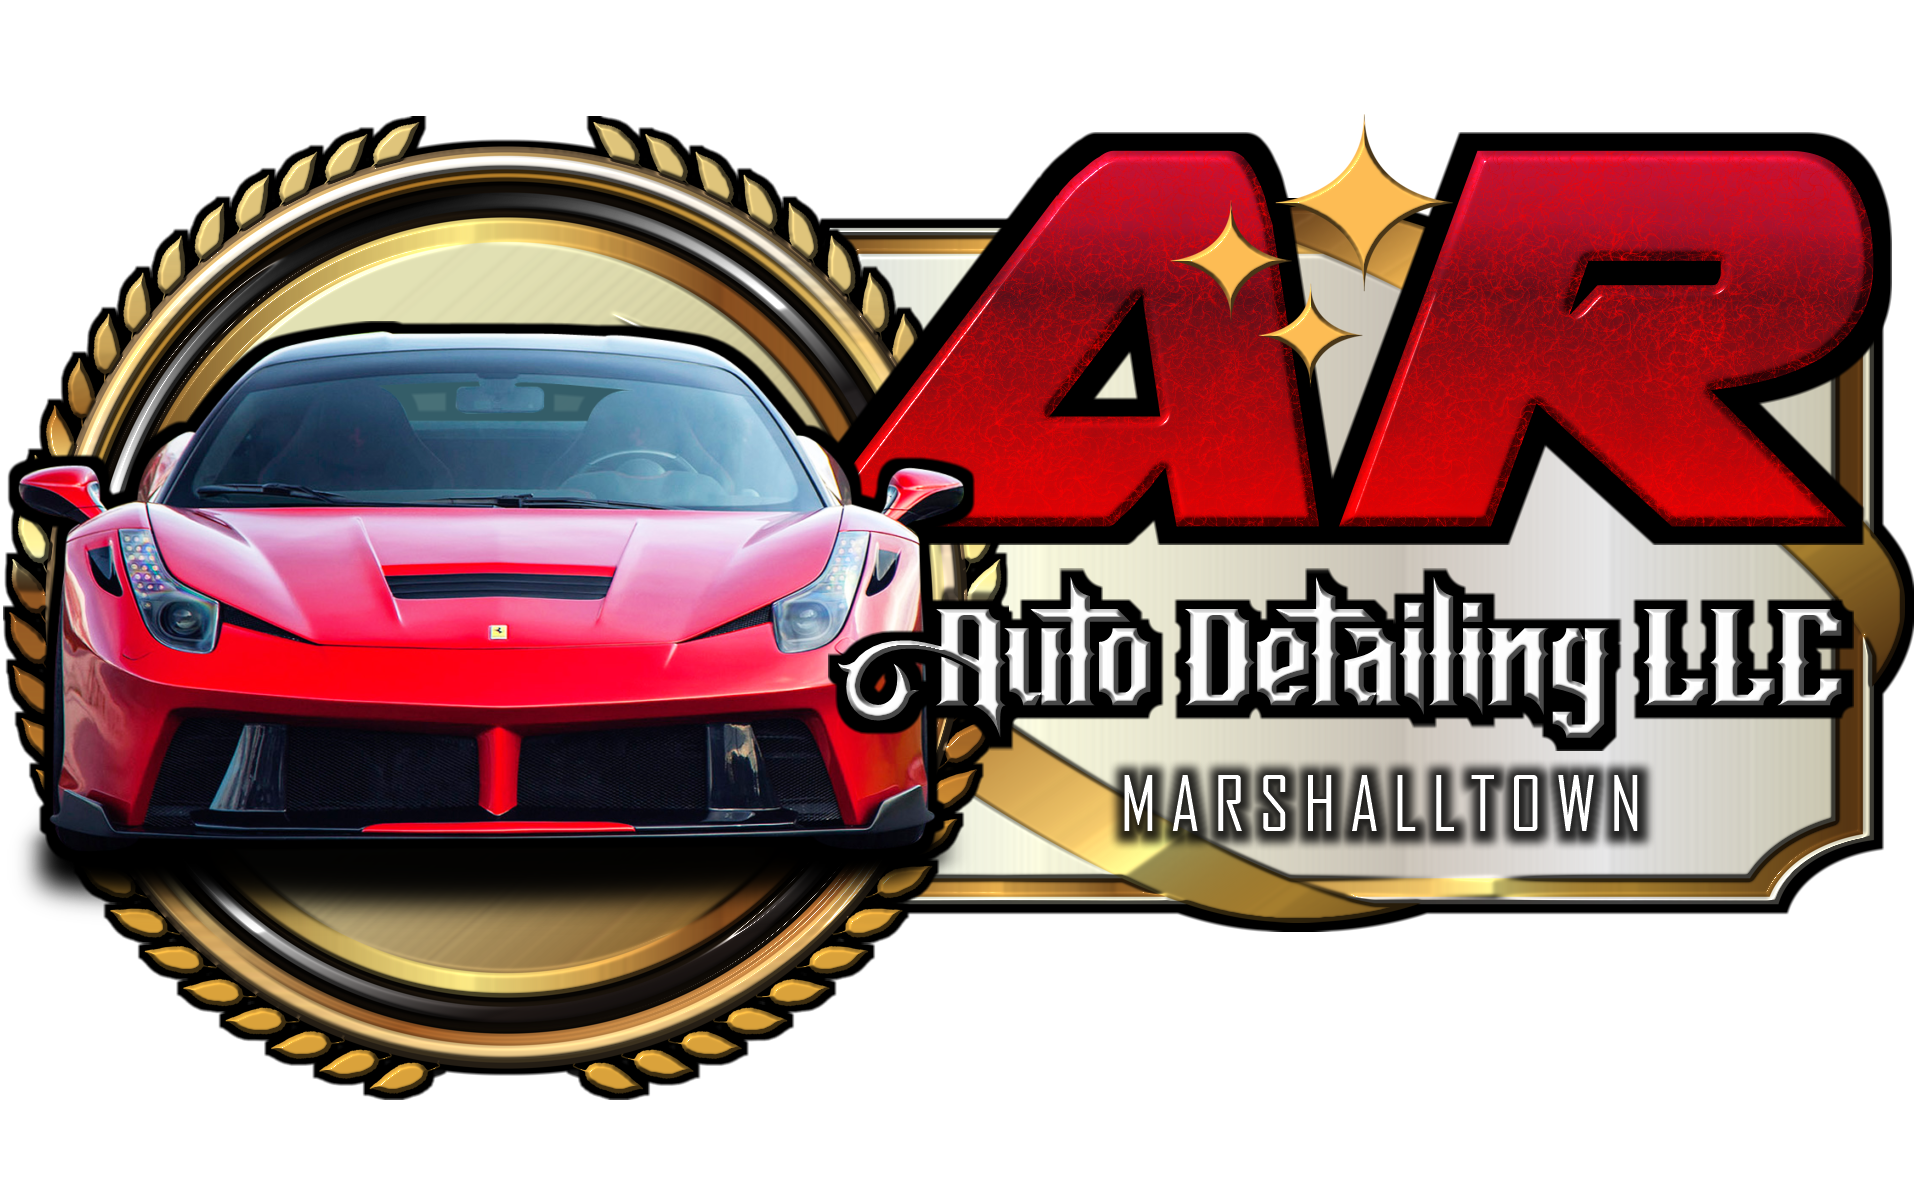 AR Auto Detailing LLC